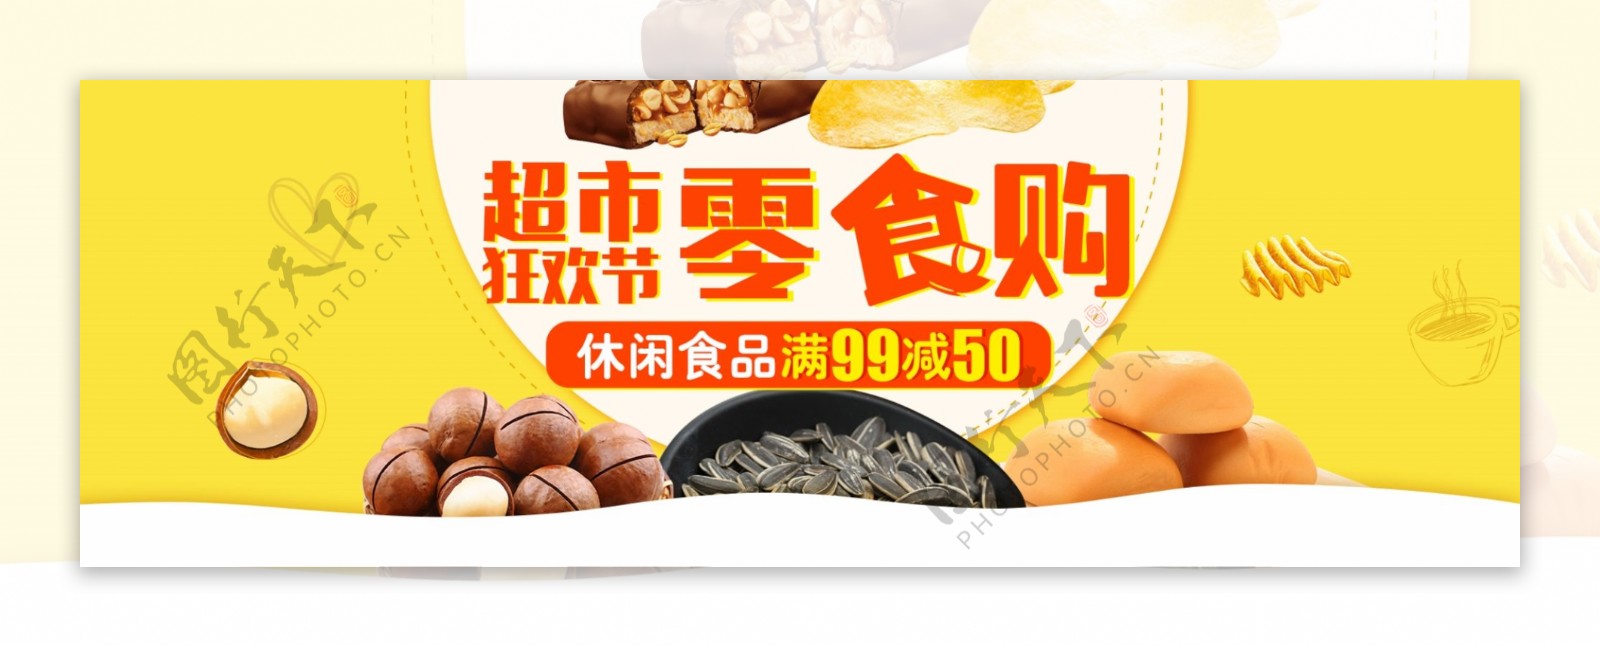 黄色促销食品茶饮超市狂欢节电商淘宝海报